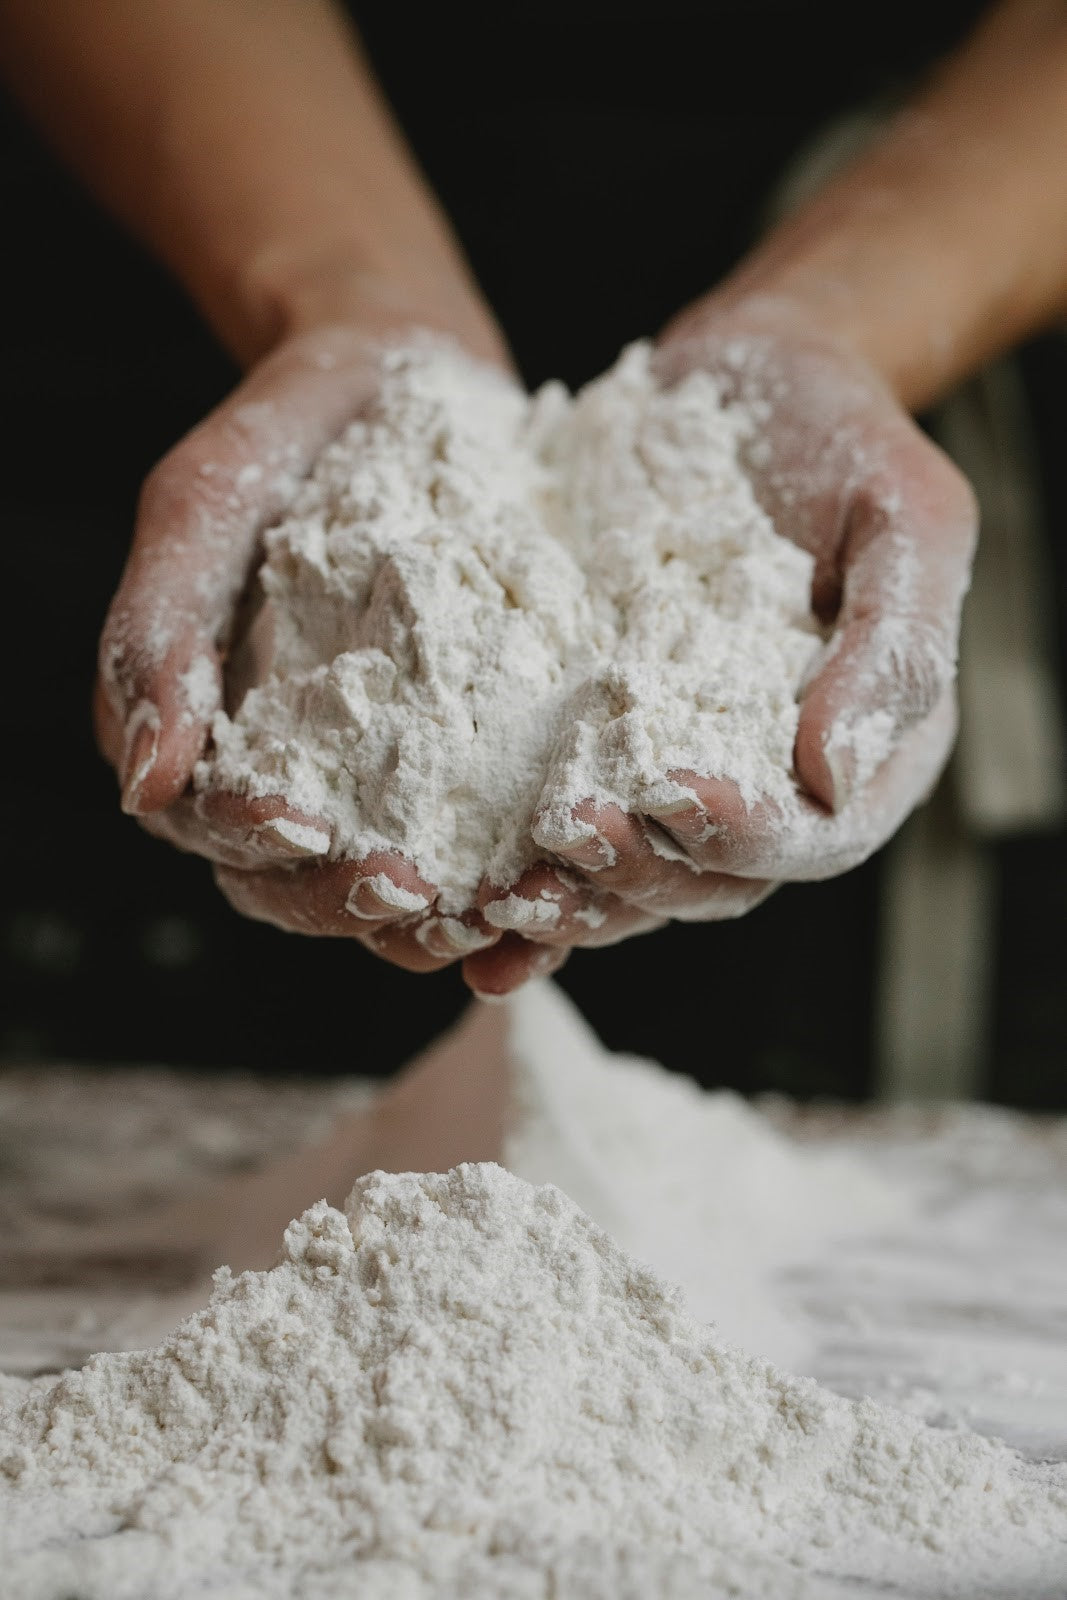 Can Gerbils Eat Flour?